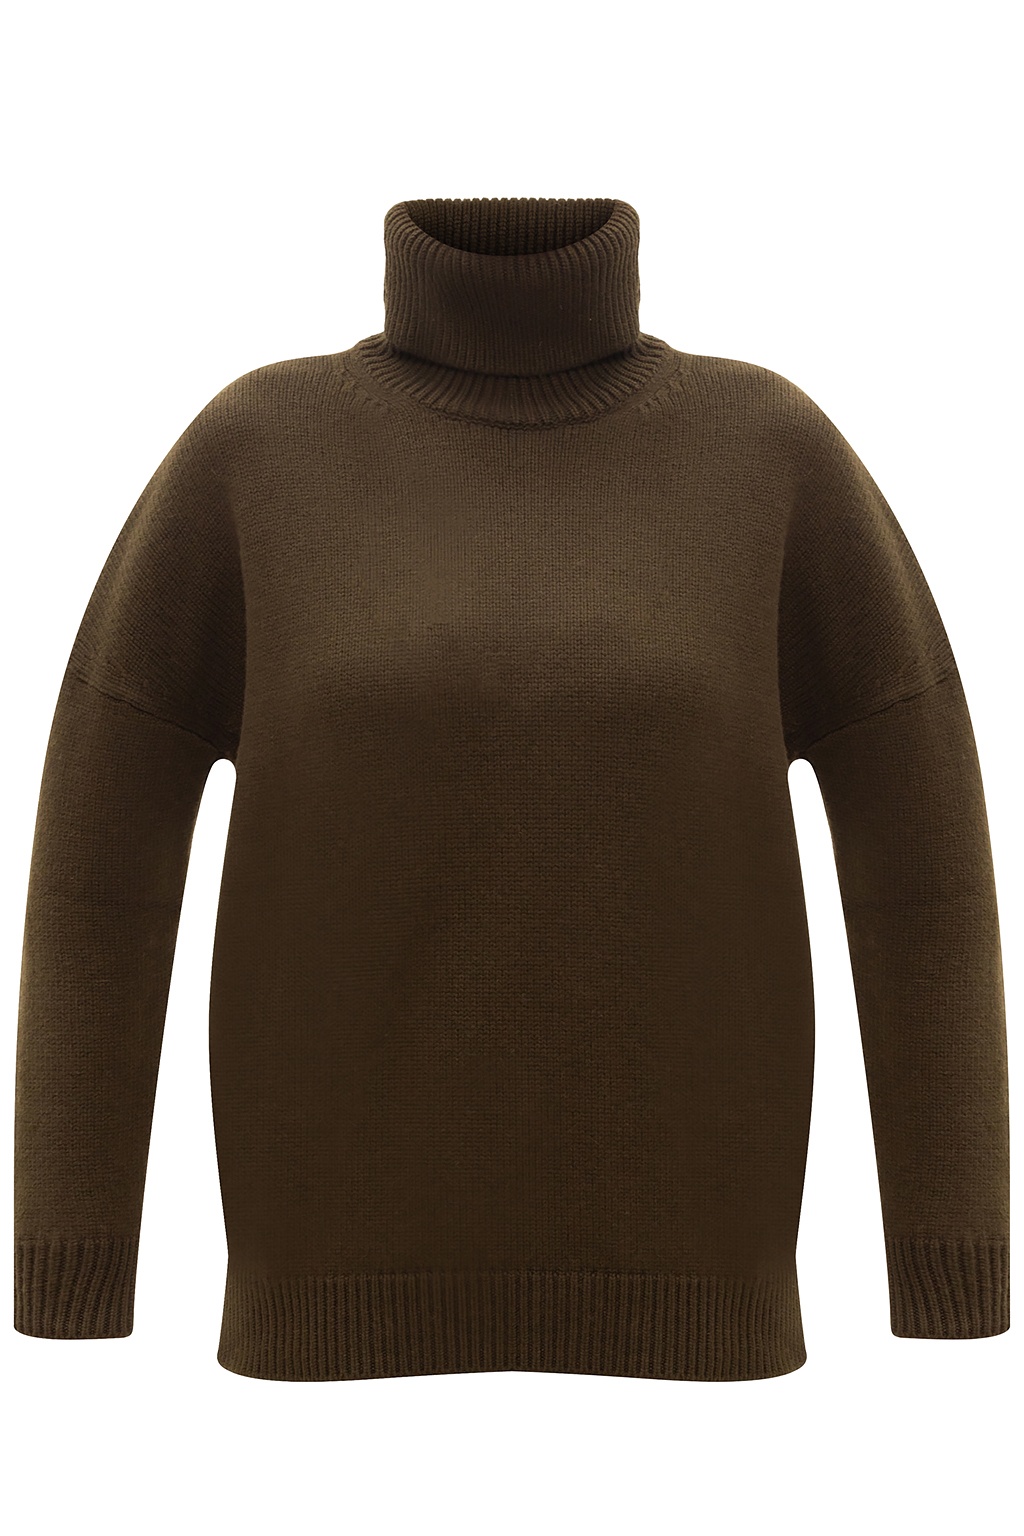 Loewe Rib-knit turtleneck sweater with logo | Women's Clothing